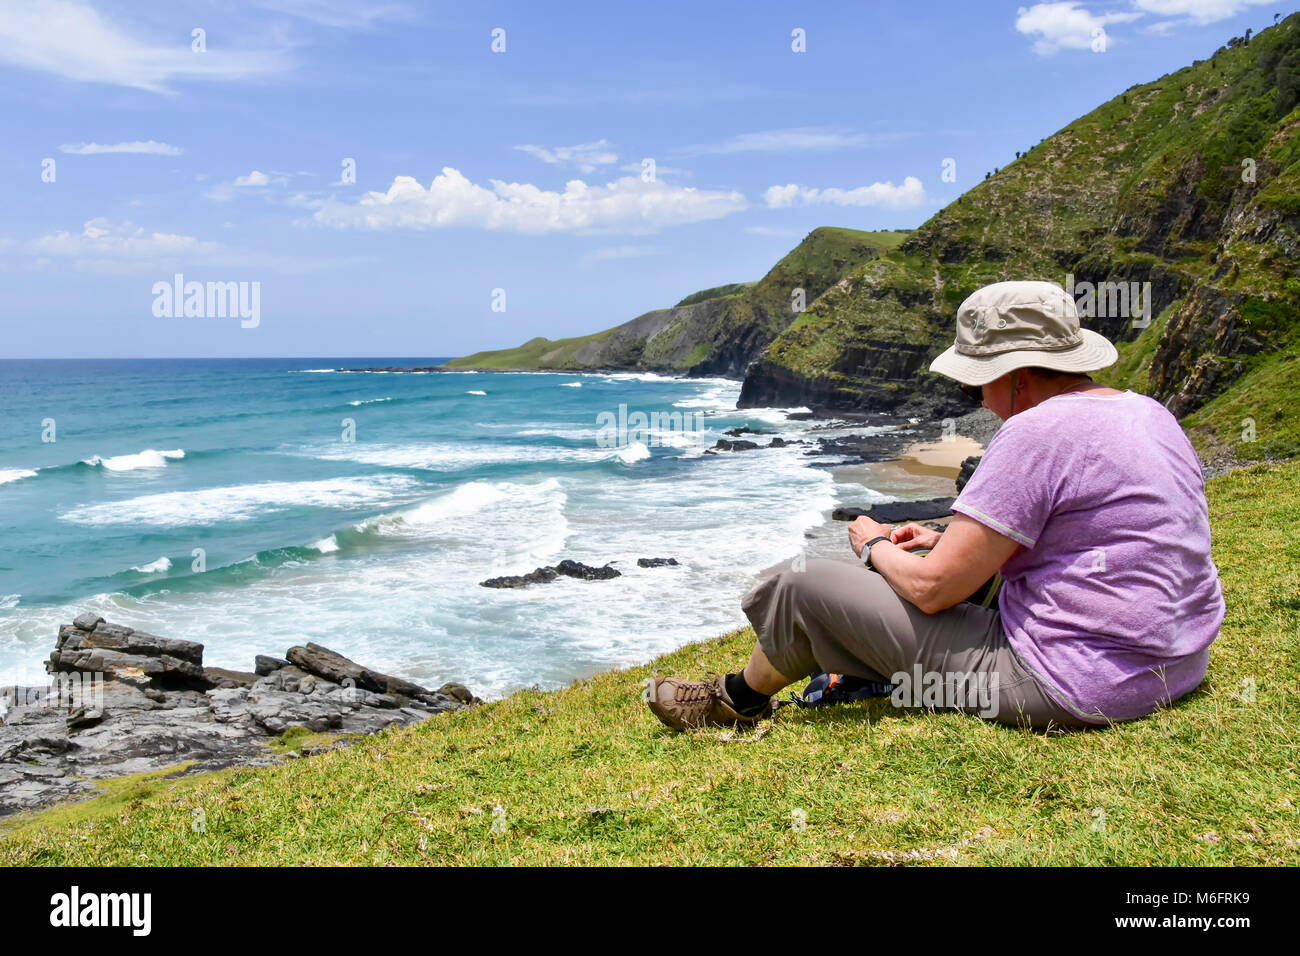 Eine weibliche Wanderer sitzen mit Blick auf die Küstenlinie auf den Spuren von Coffee Bay am Indischen Ozean im östlichen Kap an der wilden Küste von South Af Stockfoto